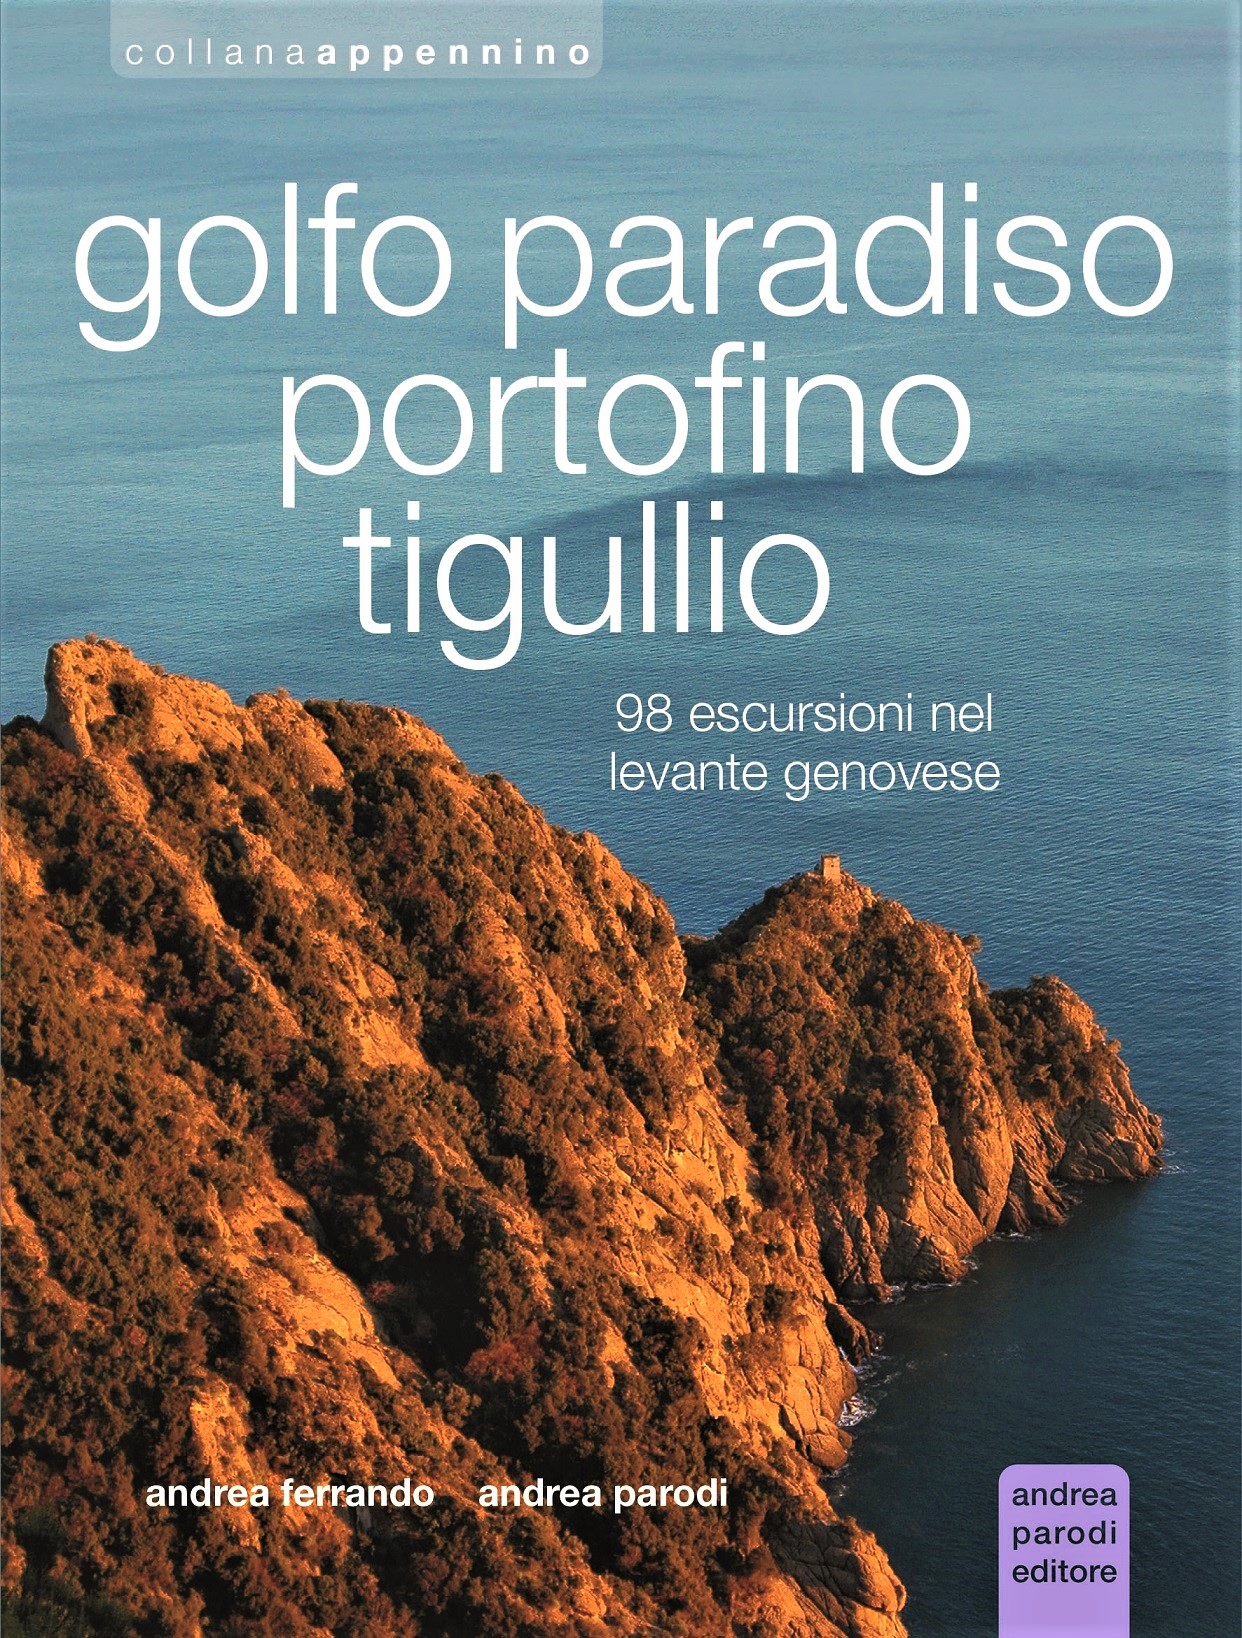 Libri Andrea Parodi / Ferrando Andrea - Golfo Paradiso, Portofino, Tigullio NUOVO SIGILLATO SUBITO DISPONIBILE